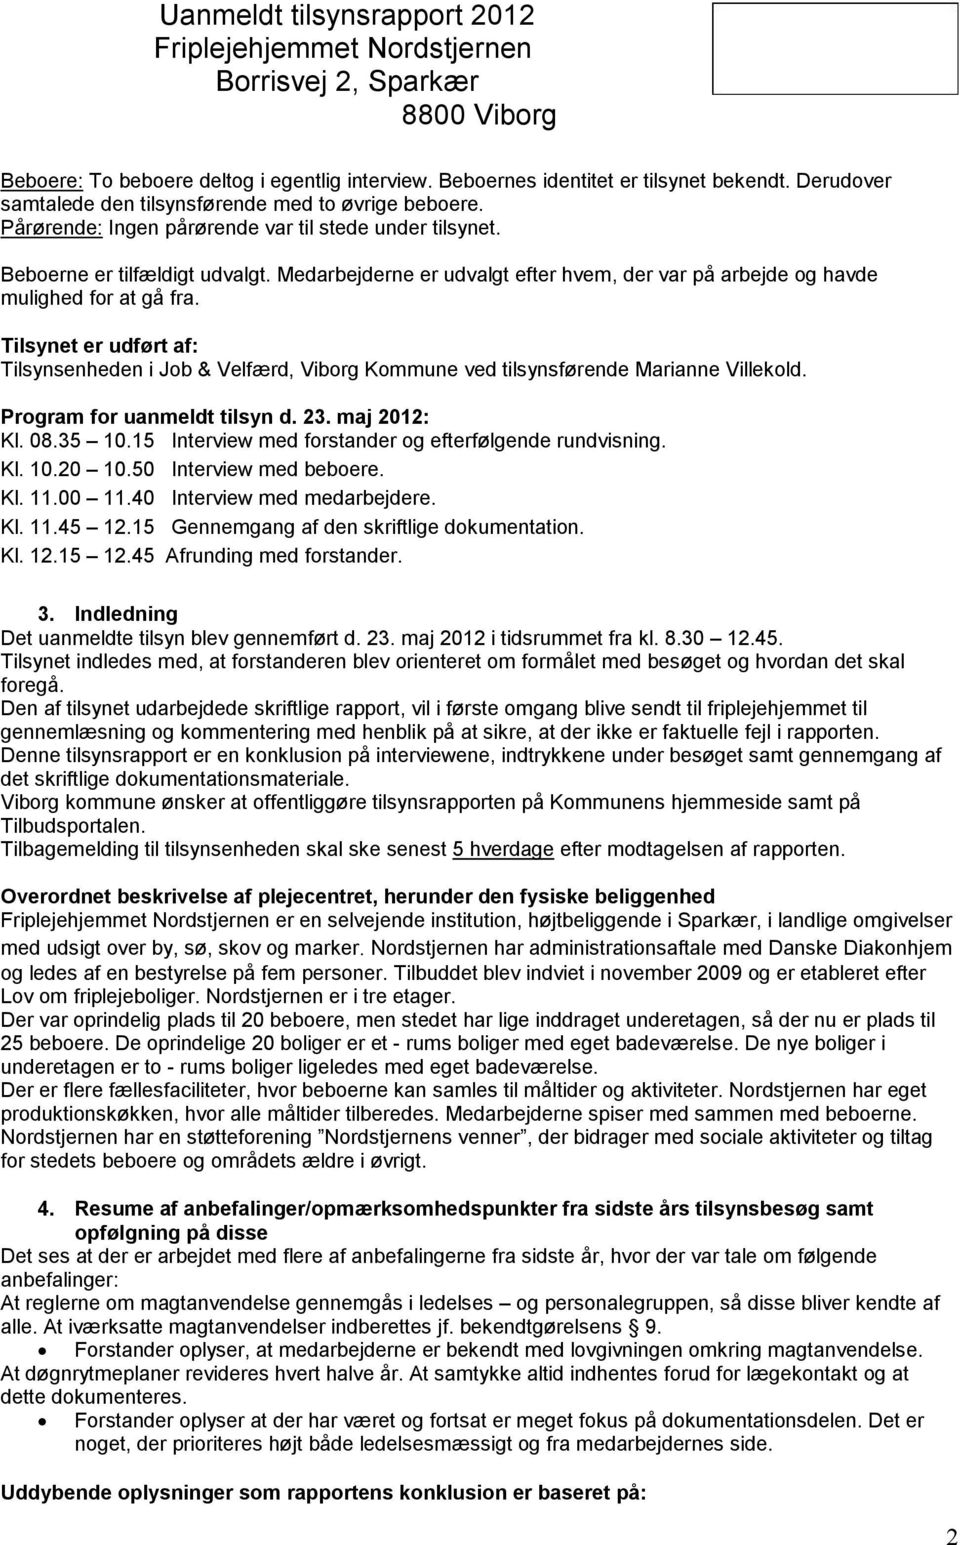 Tilsynet er udført af: Tilsynsenheden i Job & Velfærd, Viborg Kommune ved tilsynsførende Marianne Villekold. Program for uanmeldt tilsyn d. 23. maj 2012: Kl. 08.35 10.